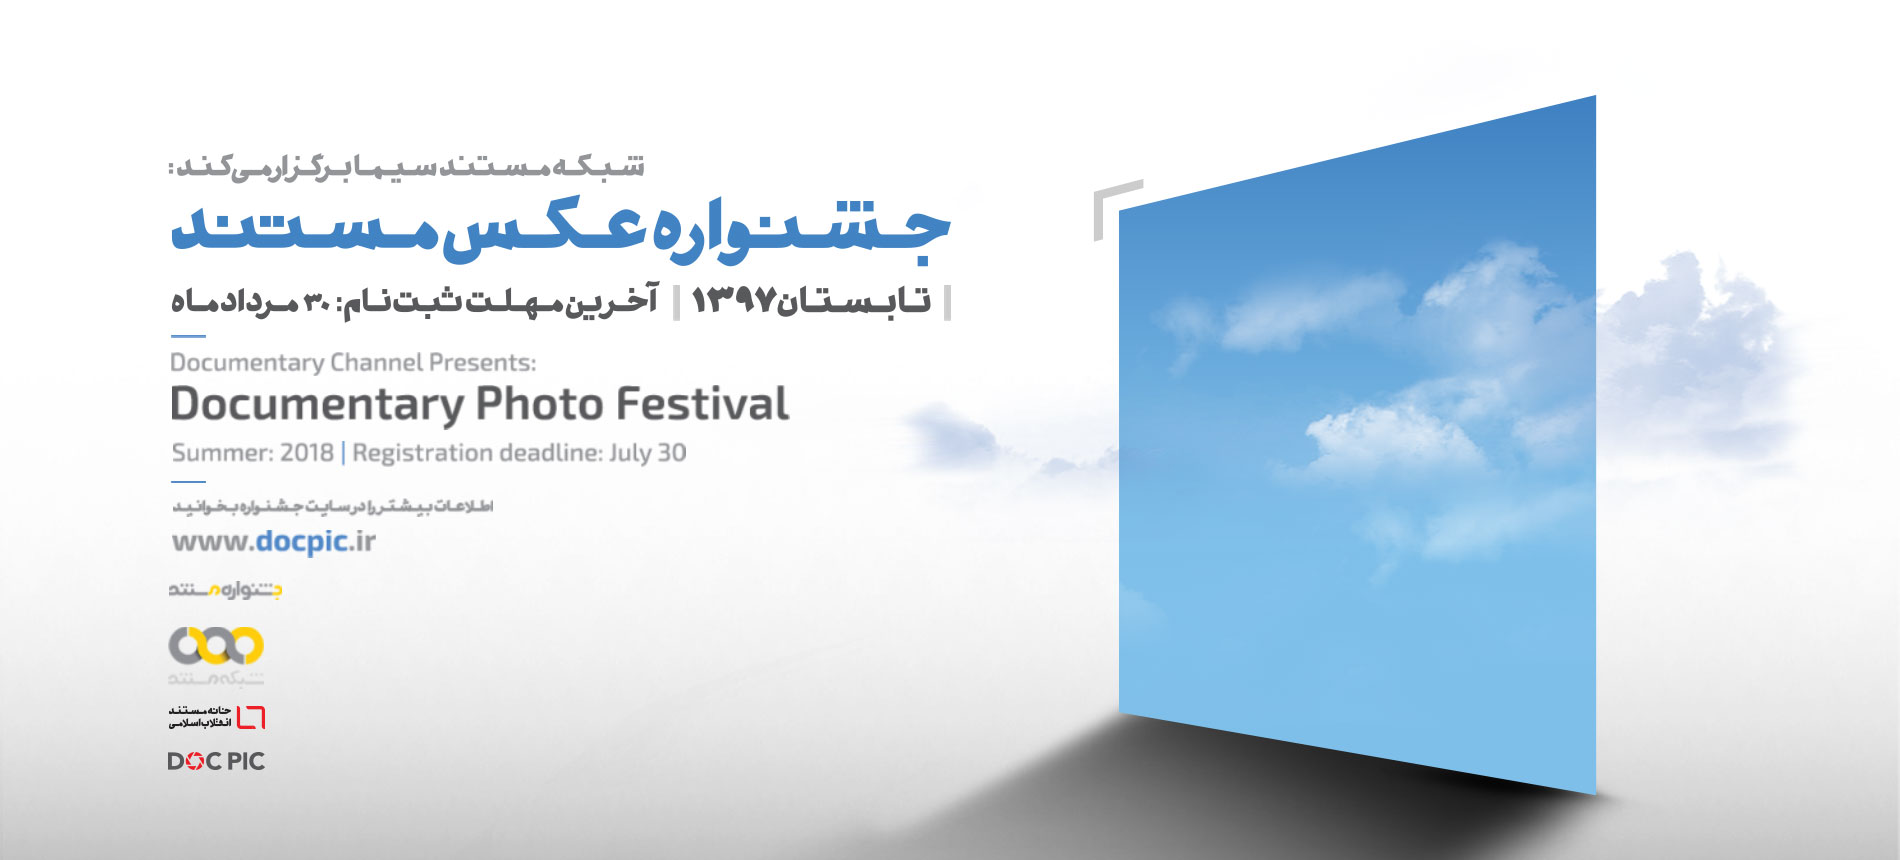 برگزاری اولین جشنواره عکس مستند/ مهلت ثبت نام تا 31 مردادماه